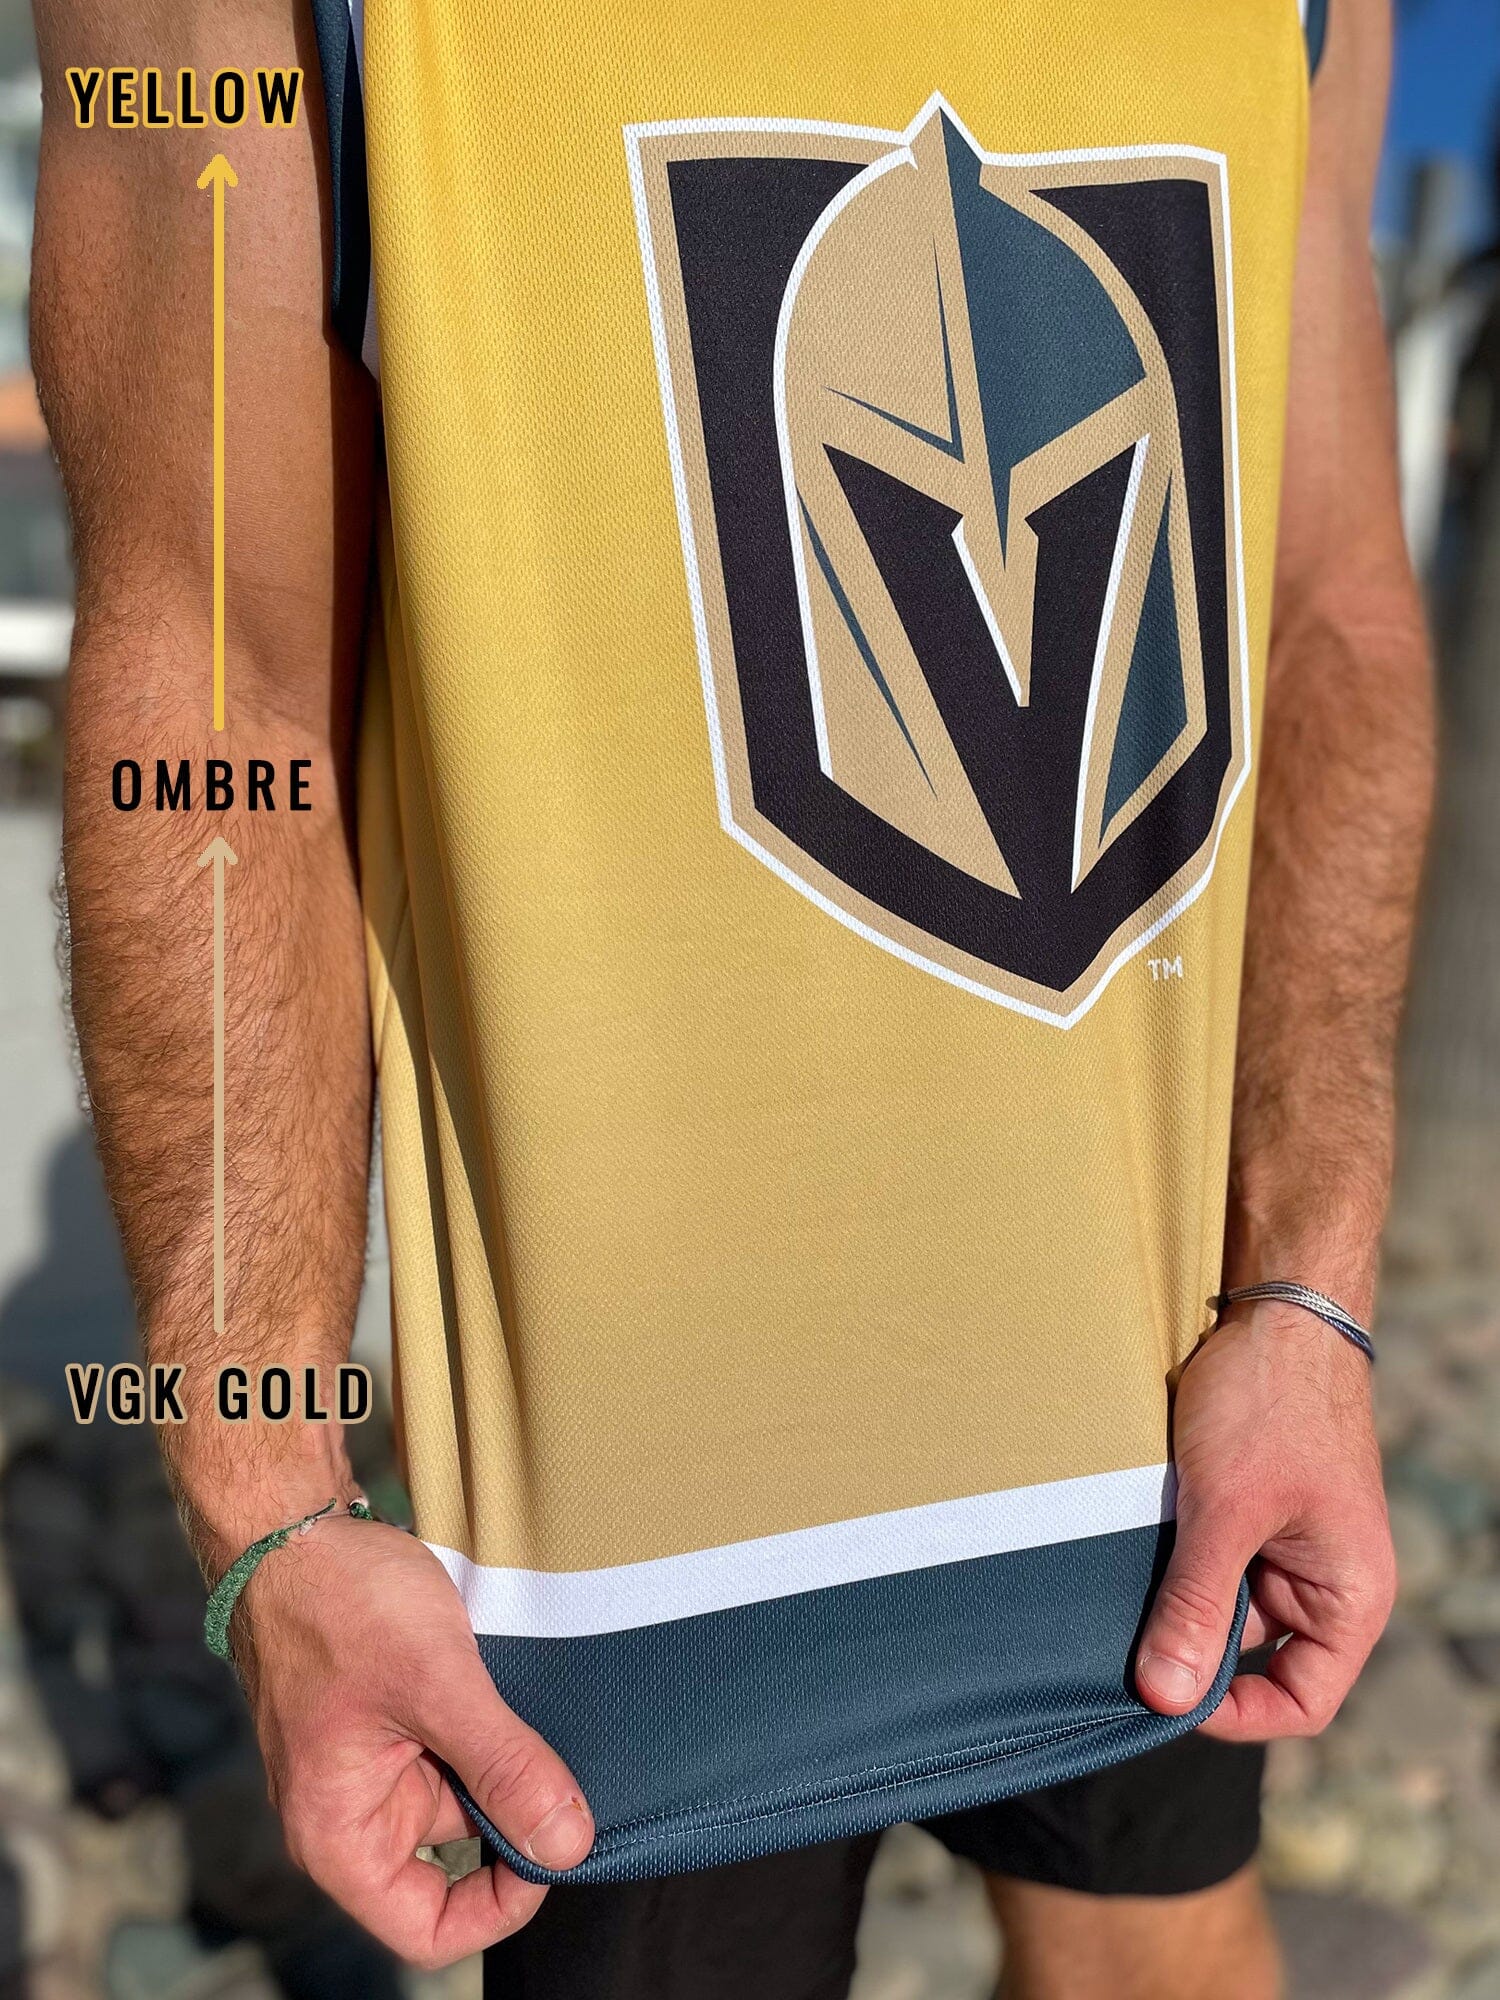 Las Vegas Golden Knights Hockey Tank - S / Gray / Polyester